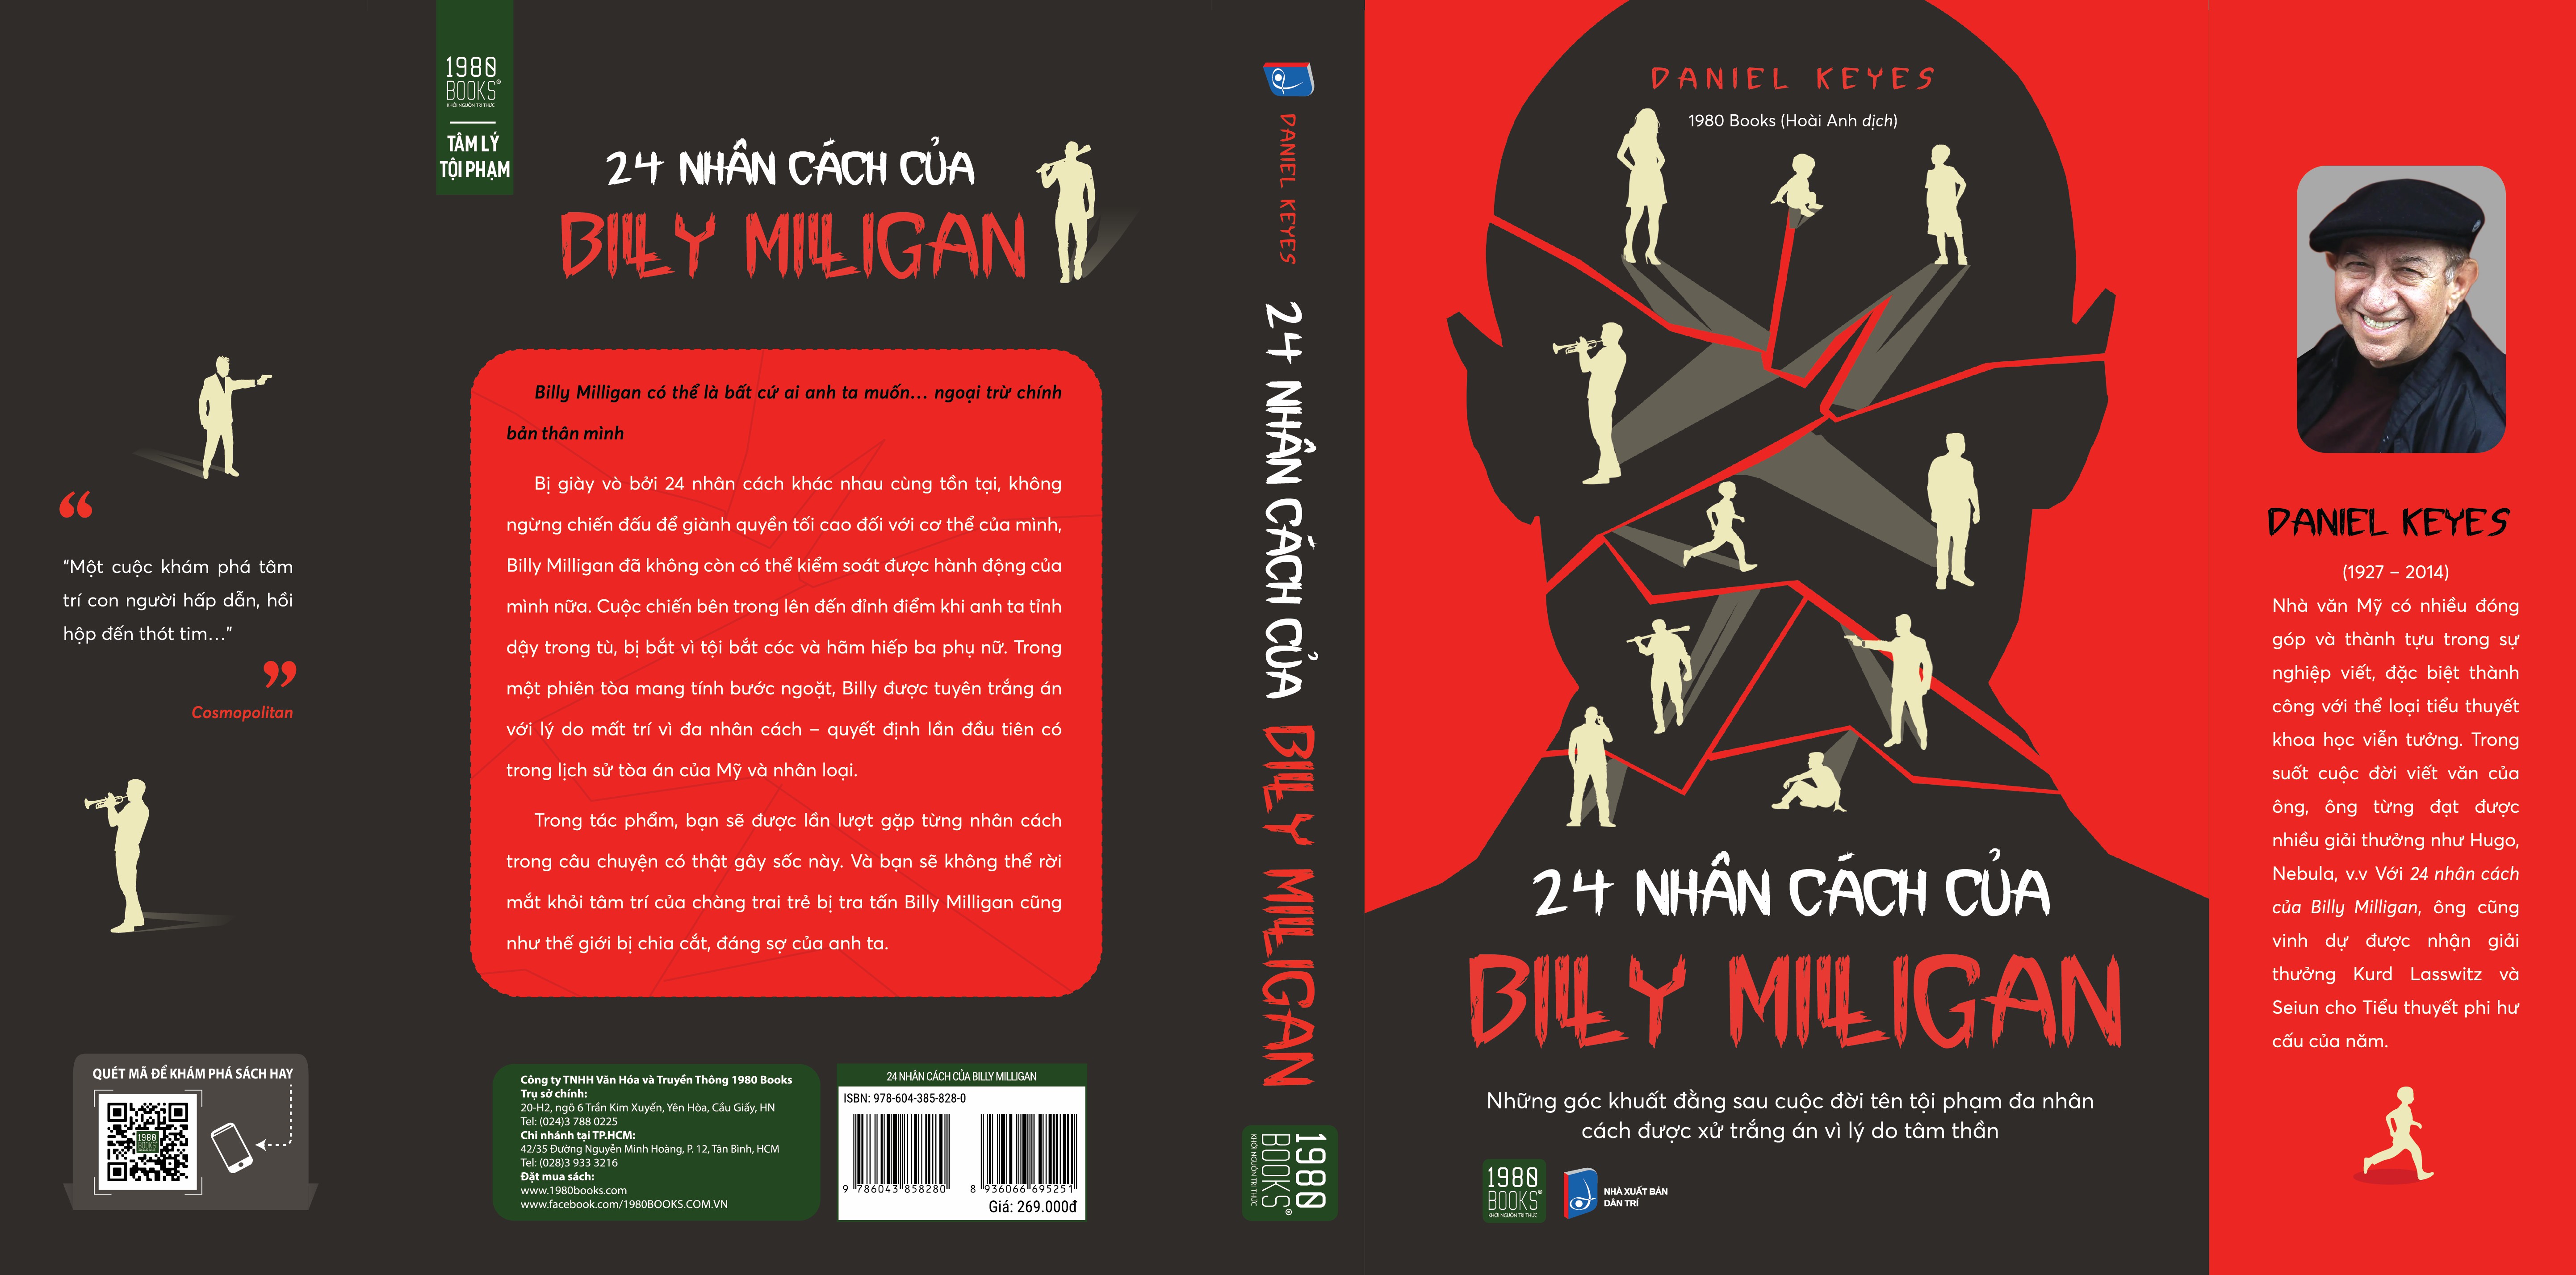 24 Nhân cách của Billy Milligan - Daniel Keyes (1980Books HCM)